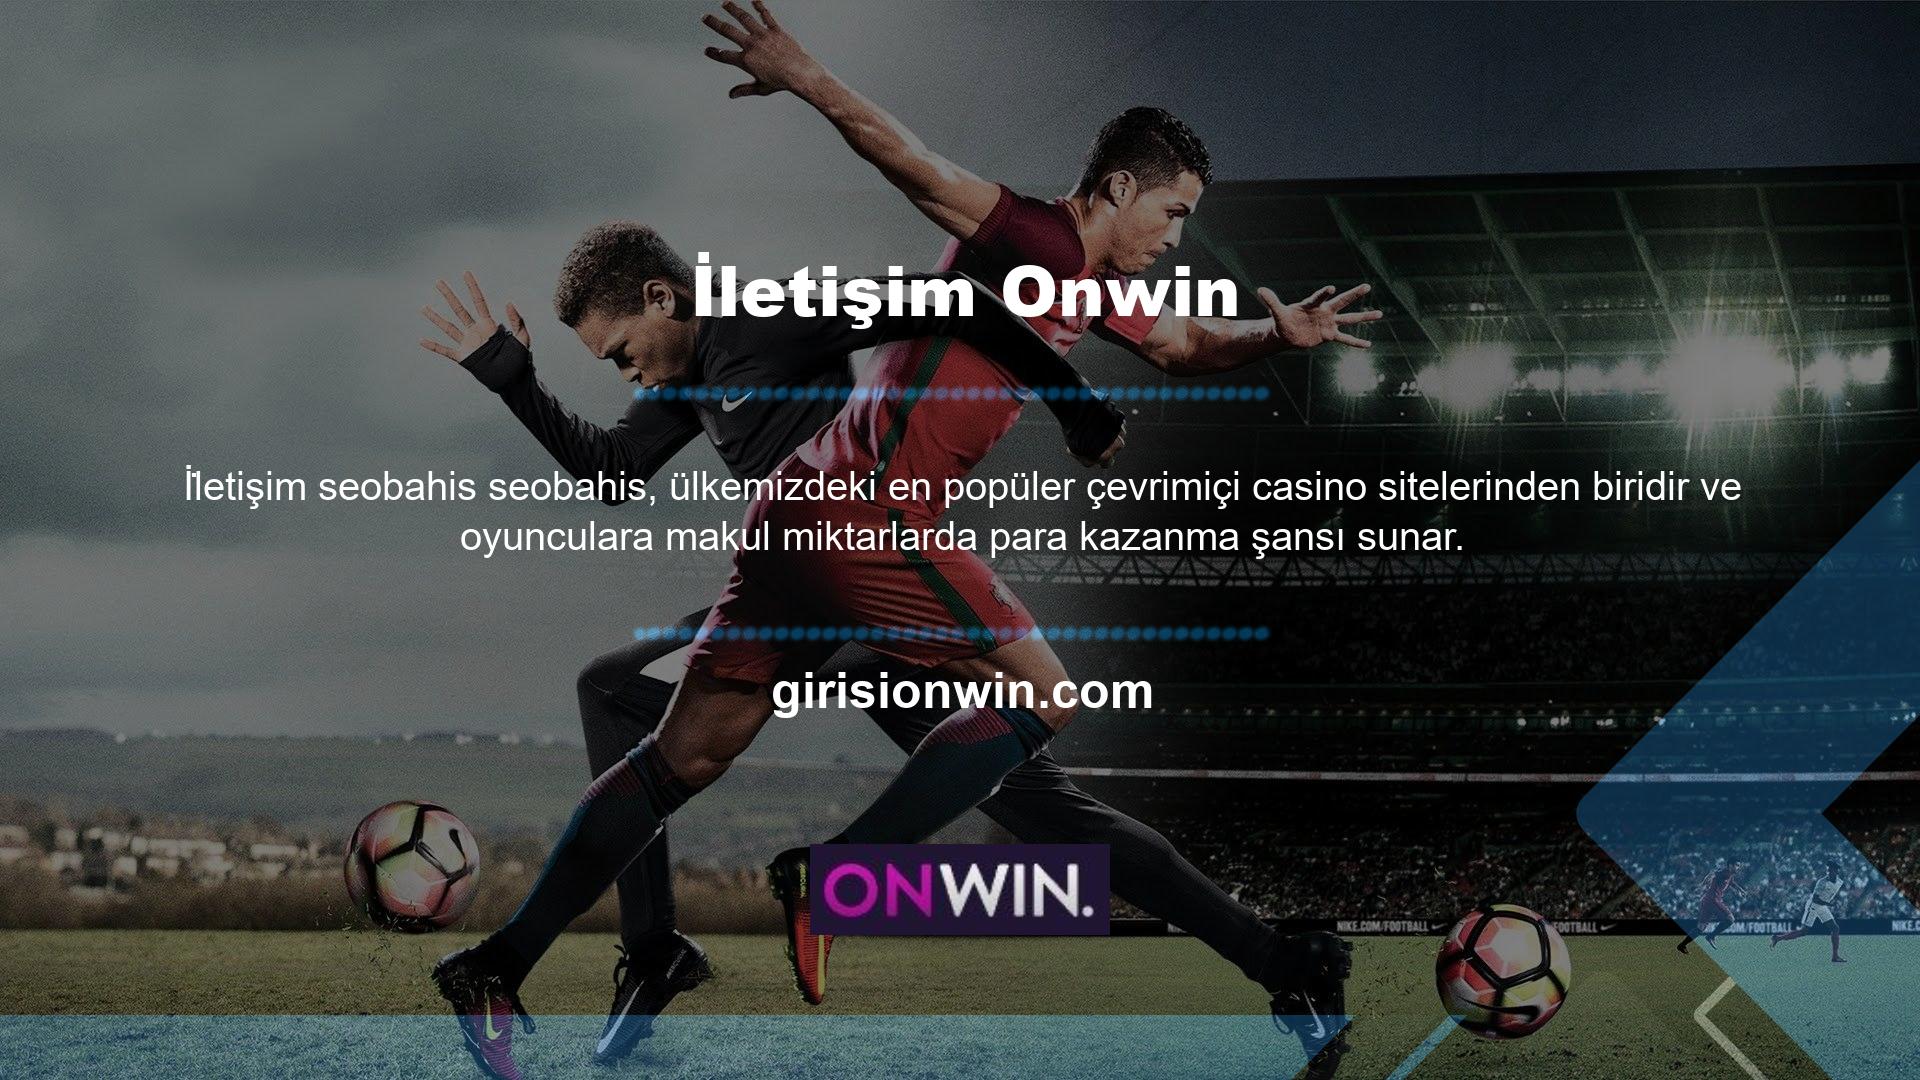 Onwin, Türkiye pazarında aktif bir rol oynamakta, pazarın ilgisini çekmekte ve her geçen gün kullanıcılara kazanç kapıları açmaktadır